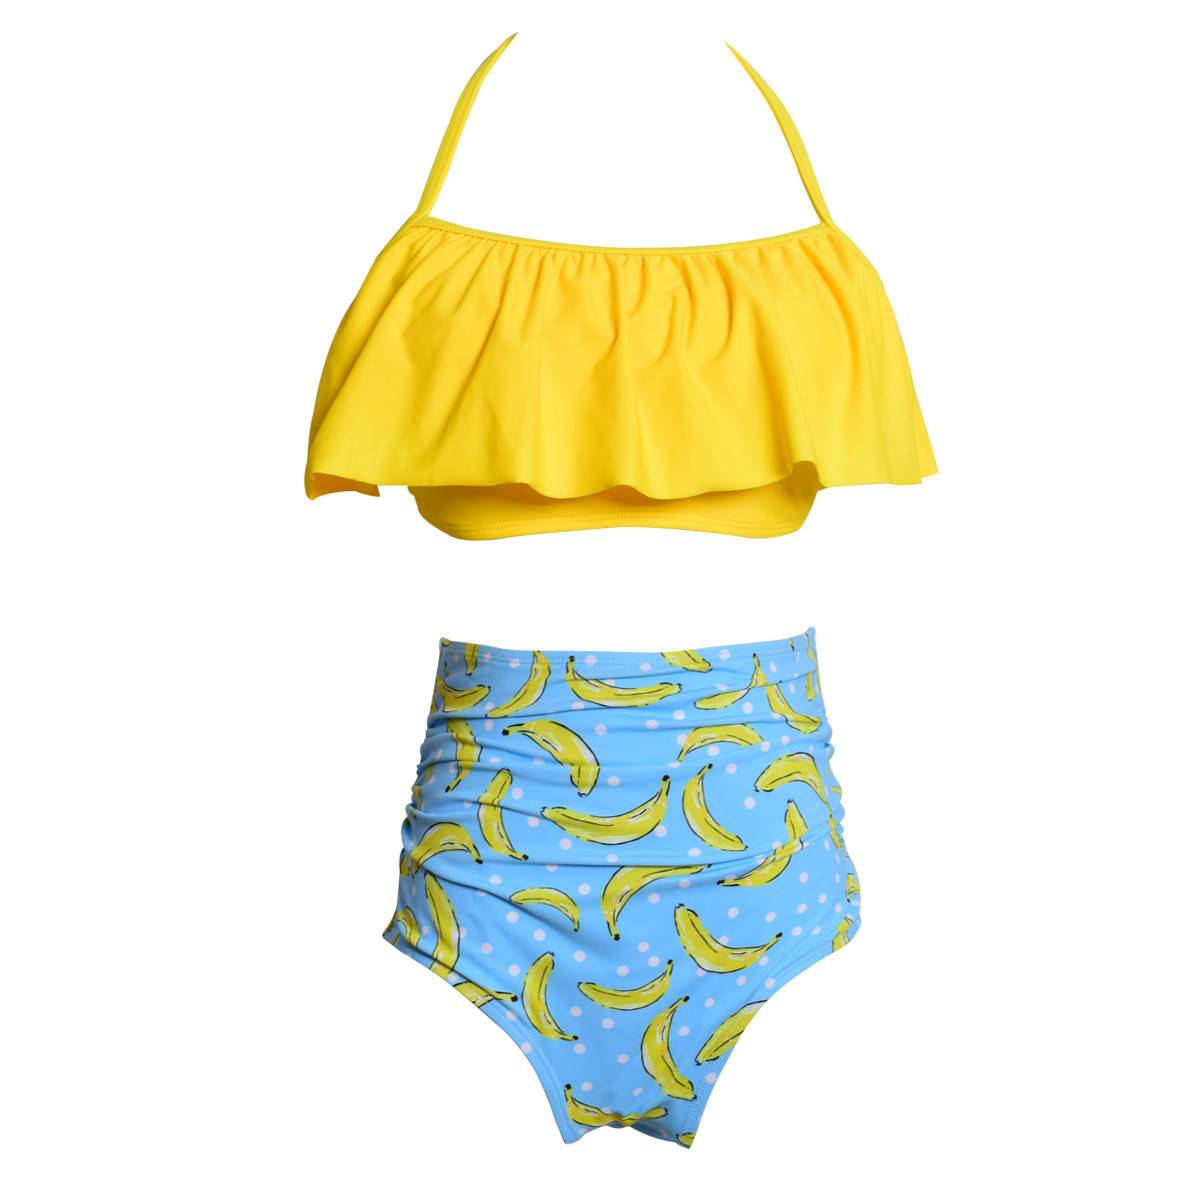 Mommy and Me Matching Swimwear Prints Yellow Banners Rufflles Bikini ...